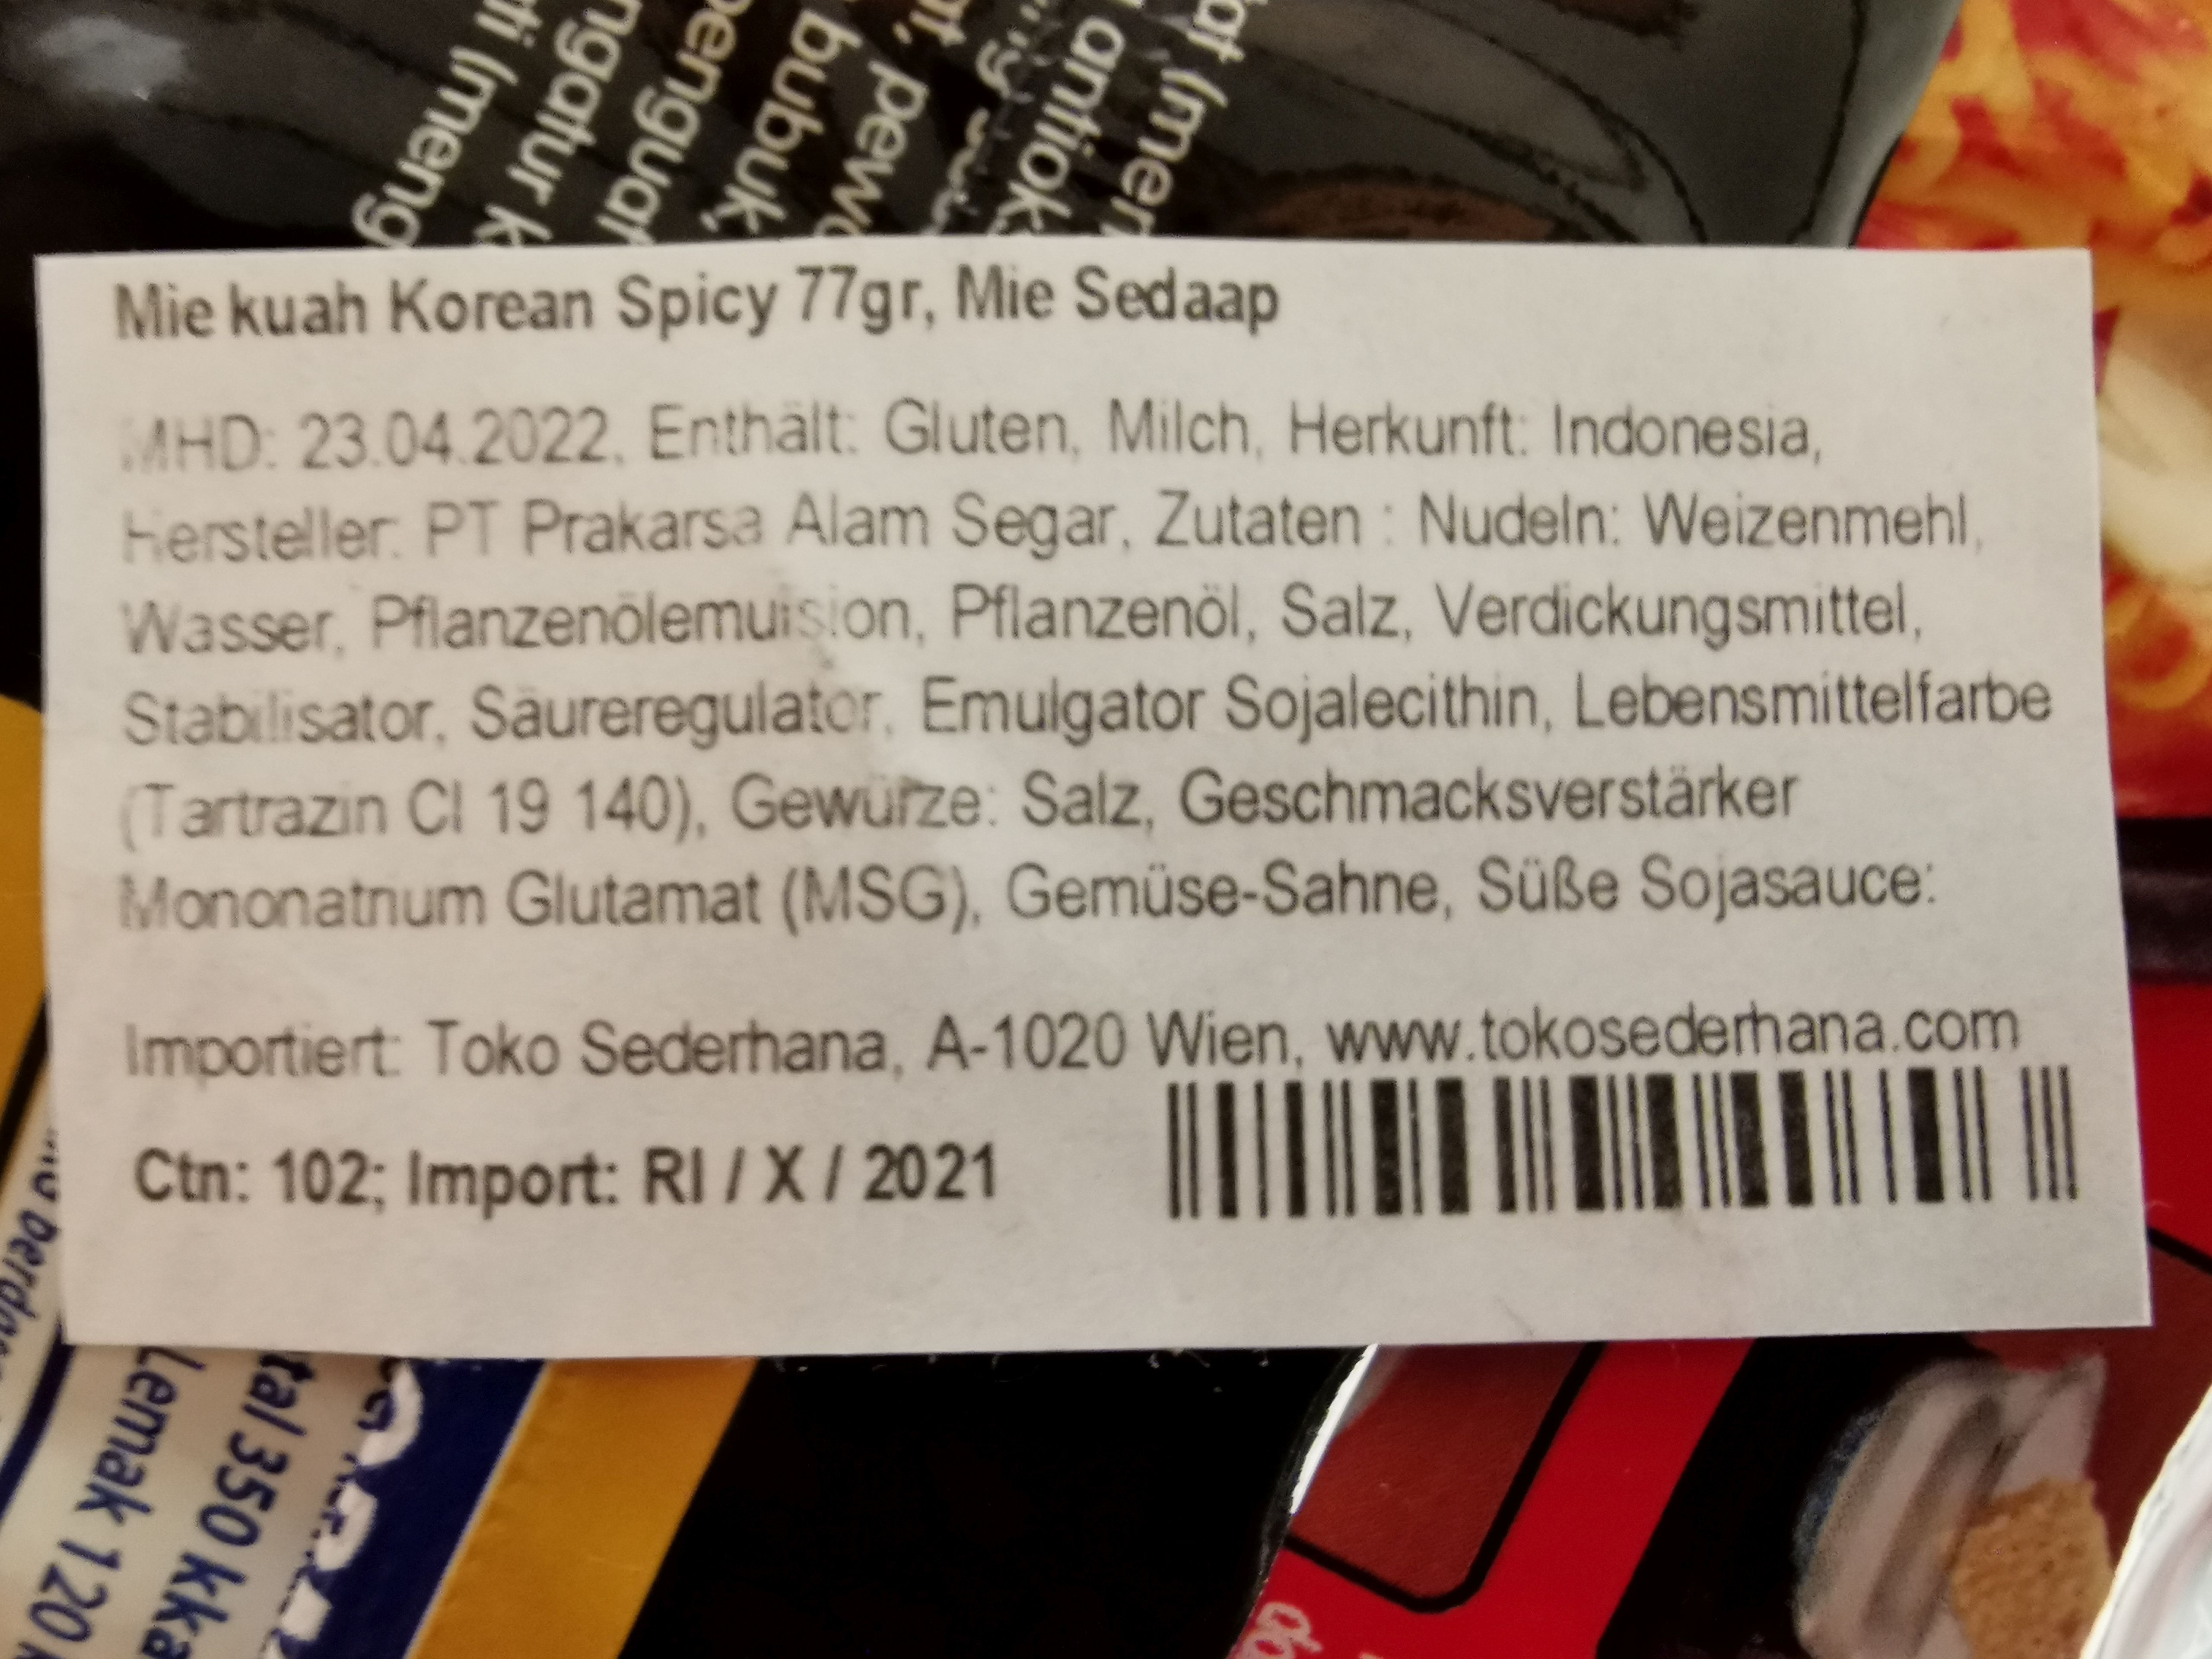 #2275: Wingsfood "Mi Sedaap Selection Korean Spicy Soup"